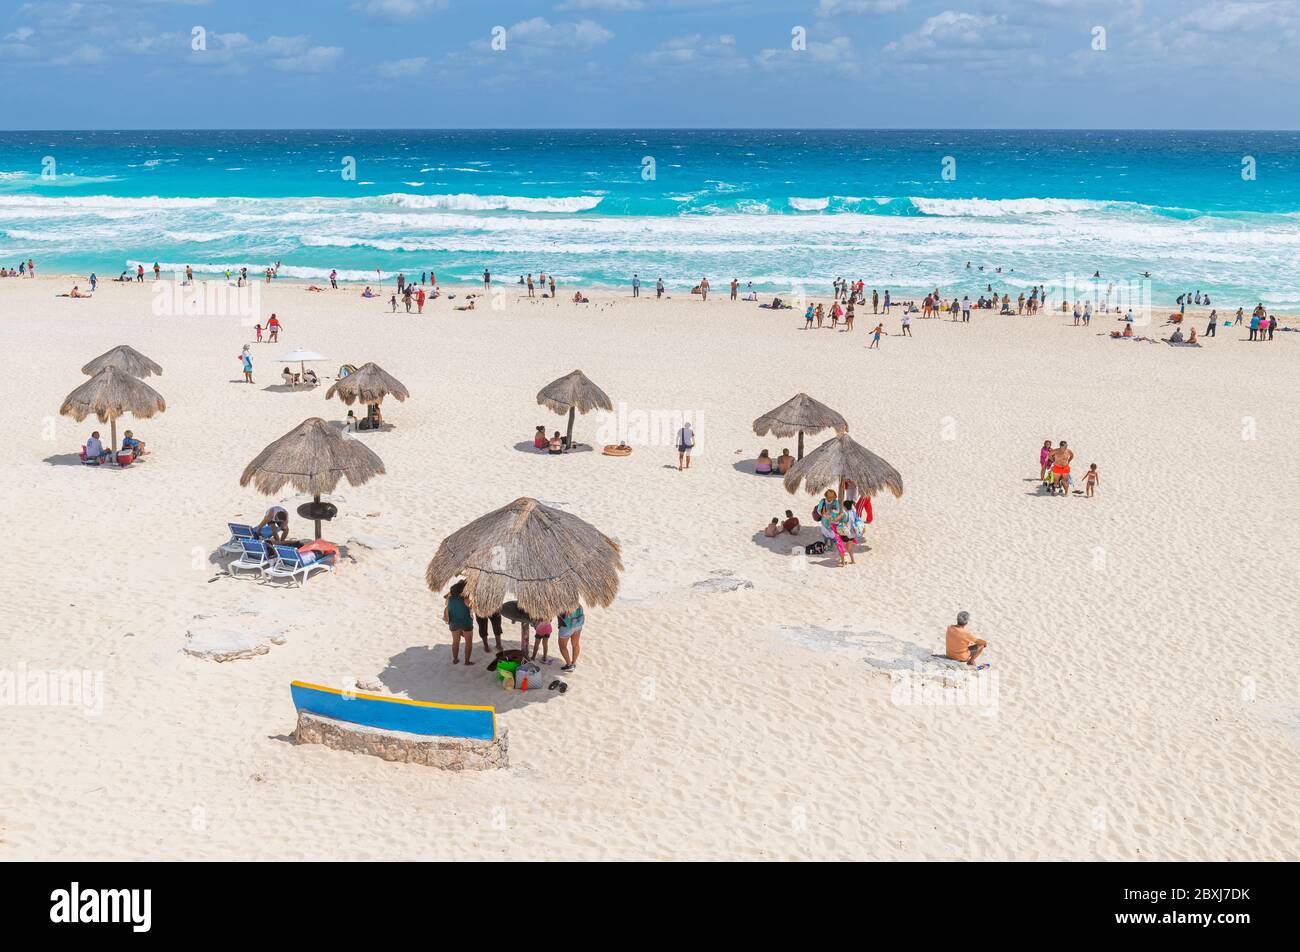 Turistas y mexicanos en Playa Delfines bajo sombrillas junto al Mar Caribe, Cancún, Península de Yucatán, México. Foto de stock